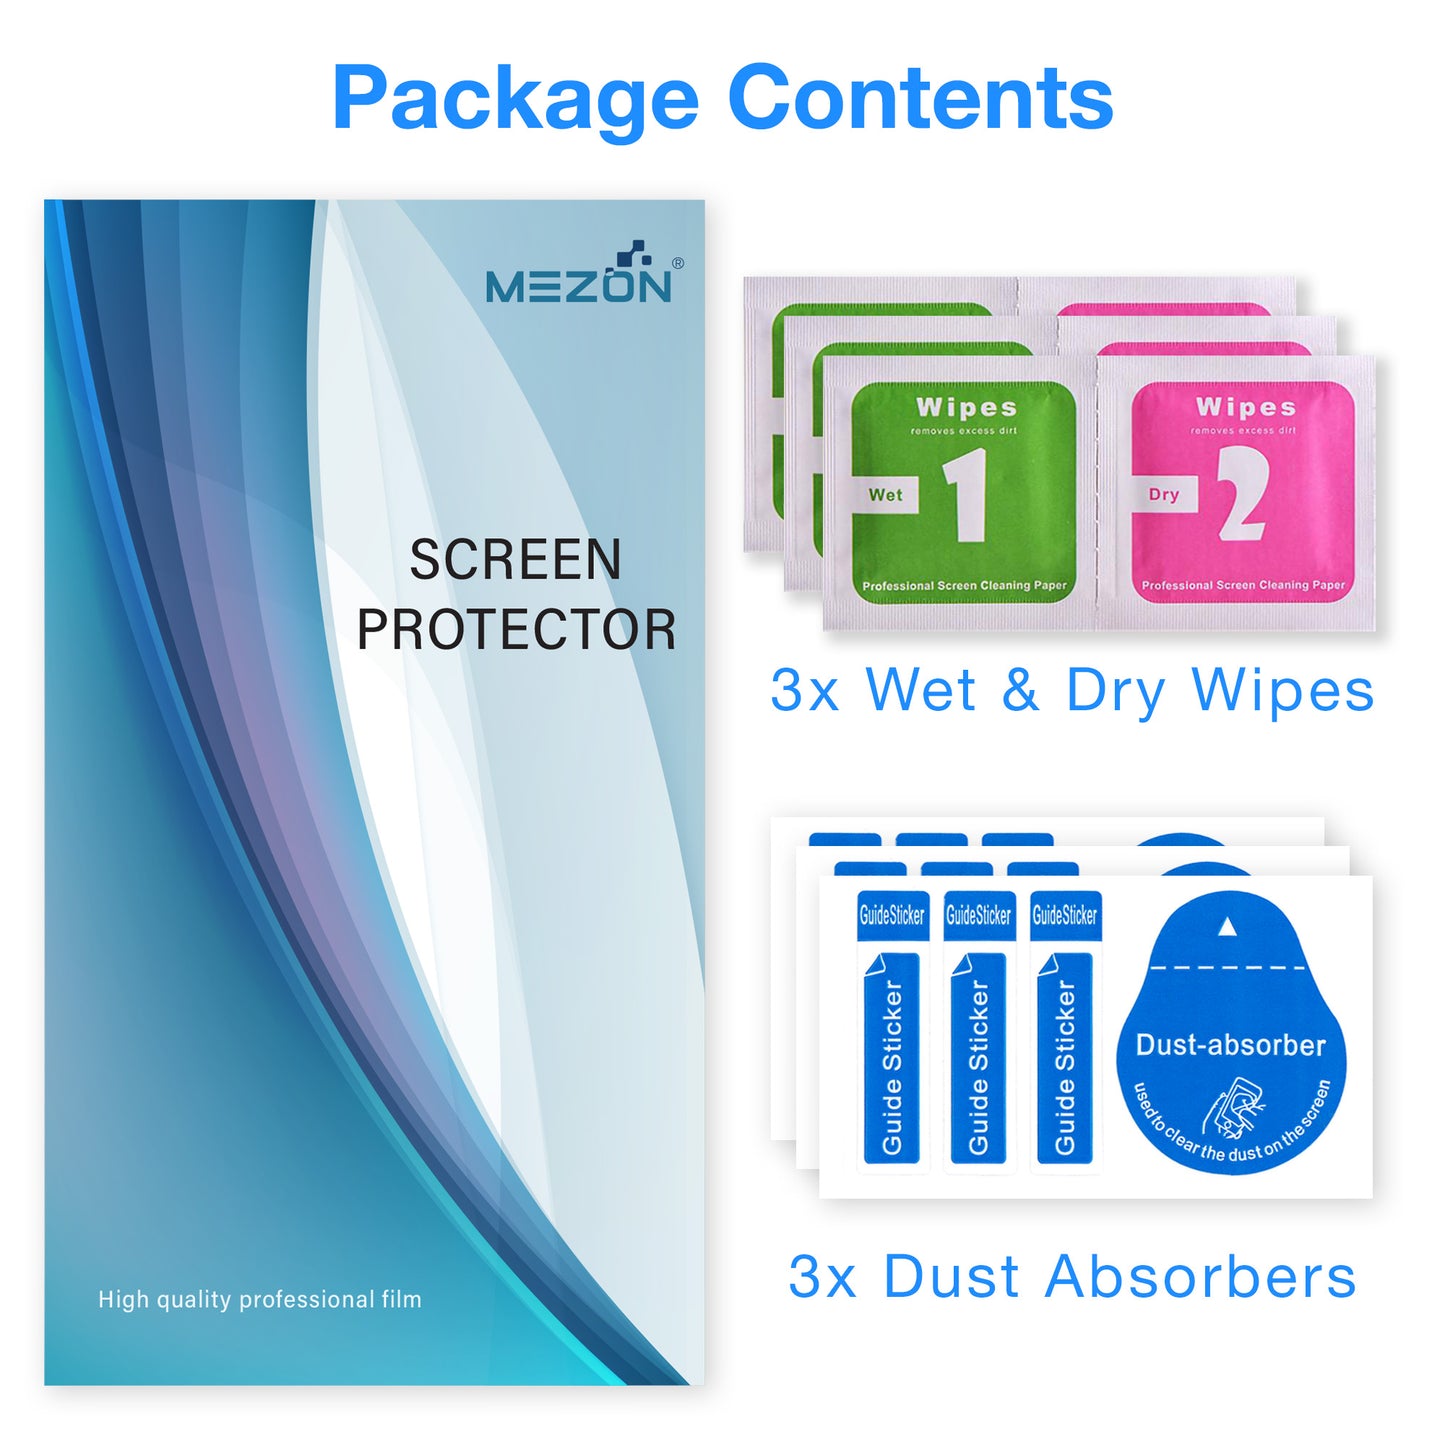 [3 Pack] MEZON Realme C3 Anti-Glare Matte Screen Protector Case Friendly Film (Realme C3, Matte)